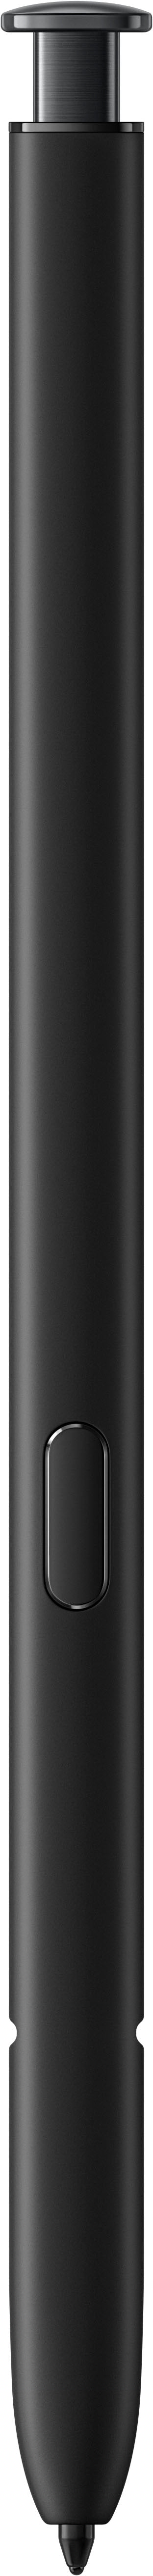 Samsung - Galaxy S23 Ultra 256GB - Phantom Black (Verizon)_8